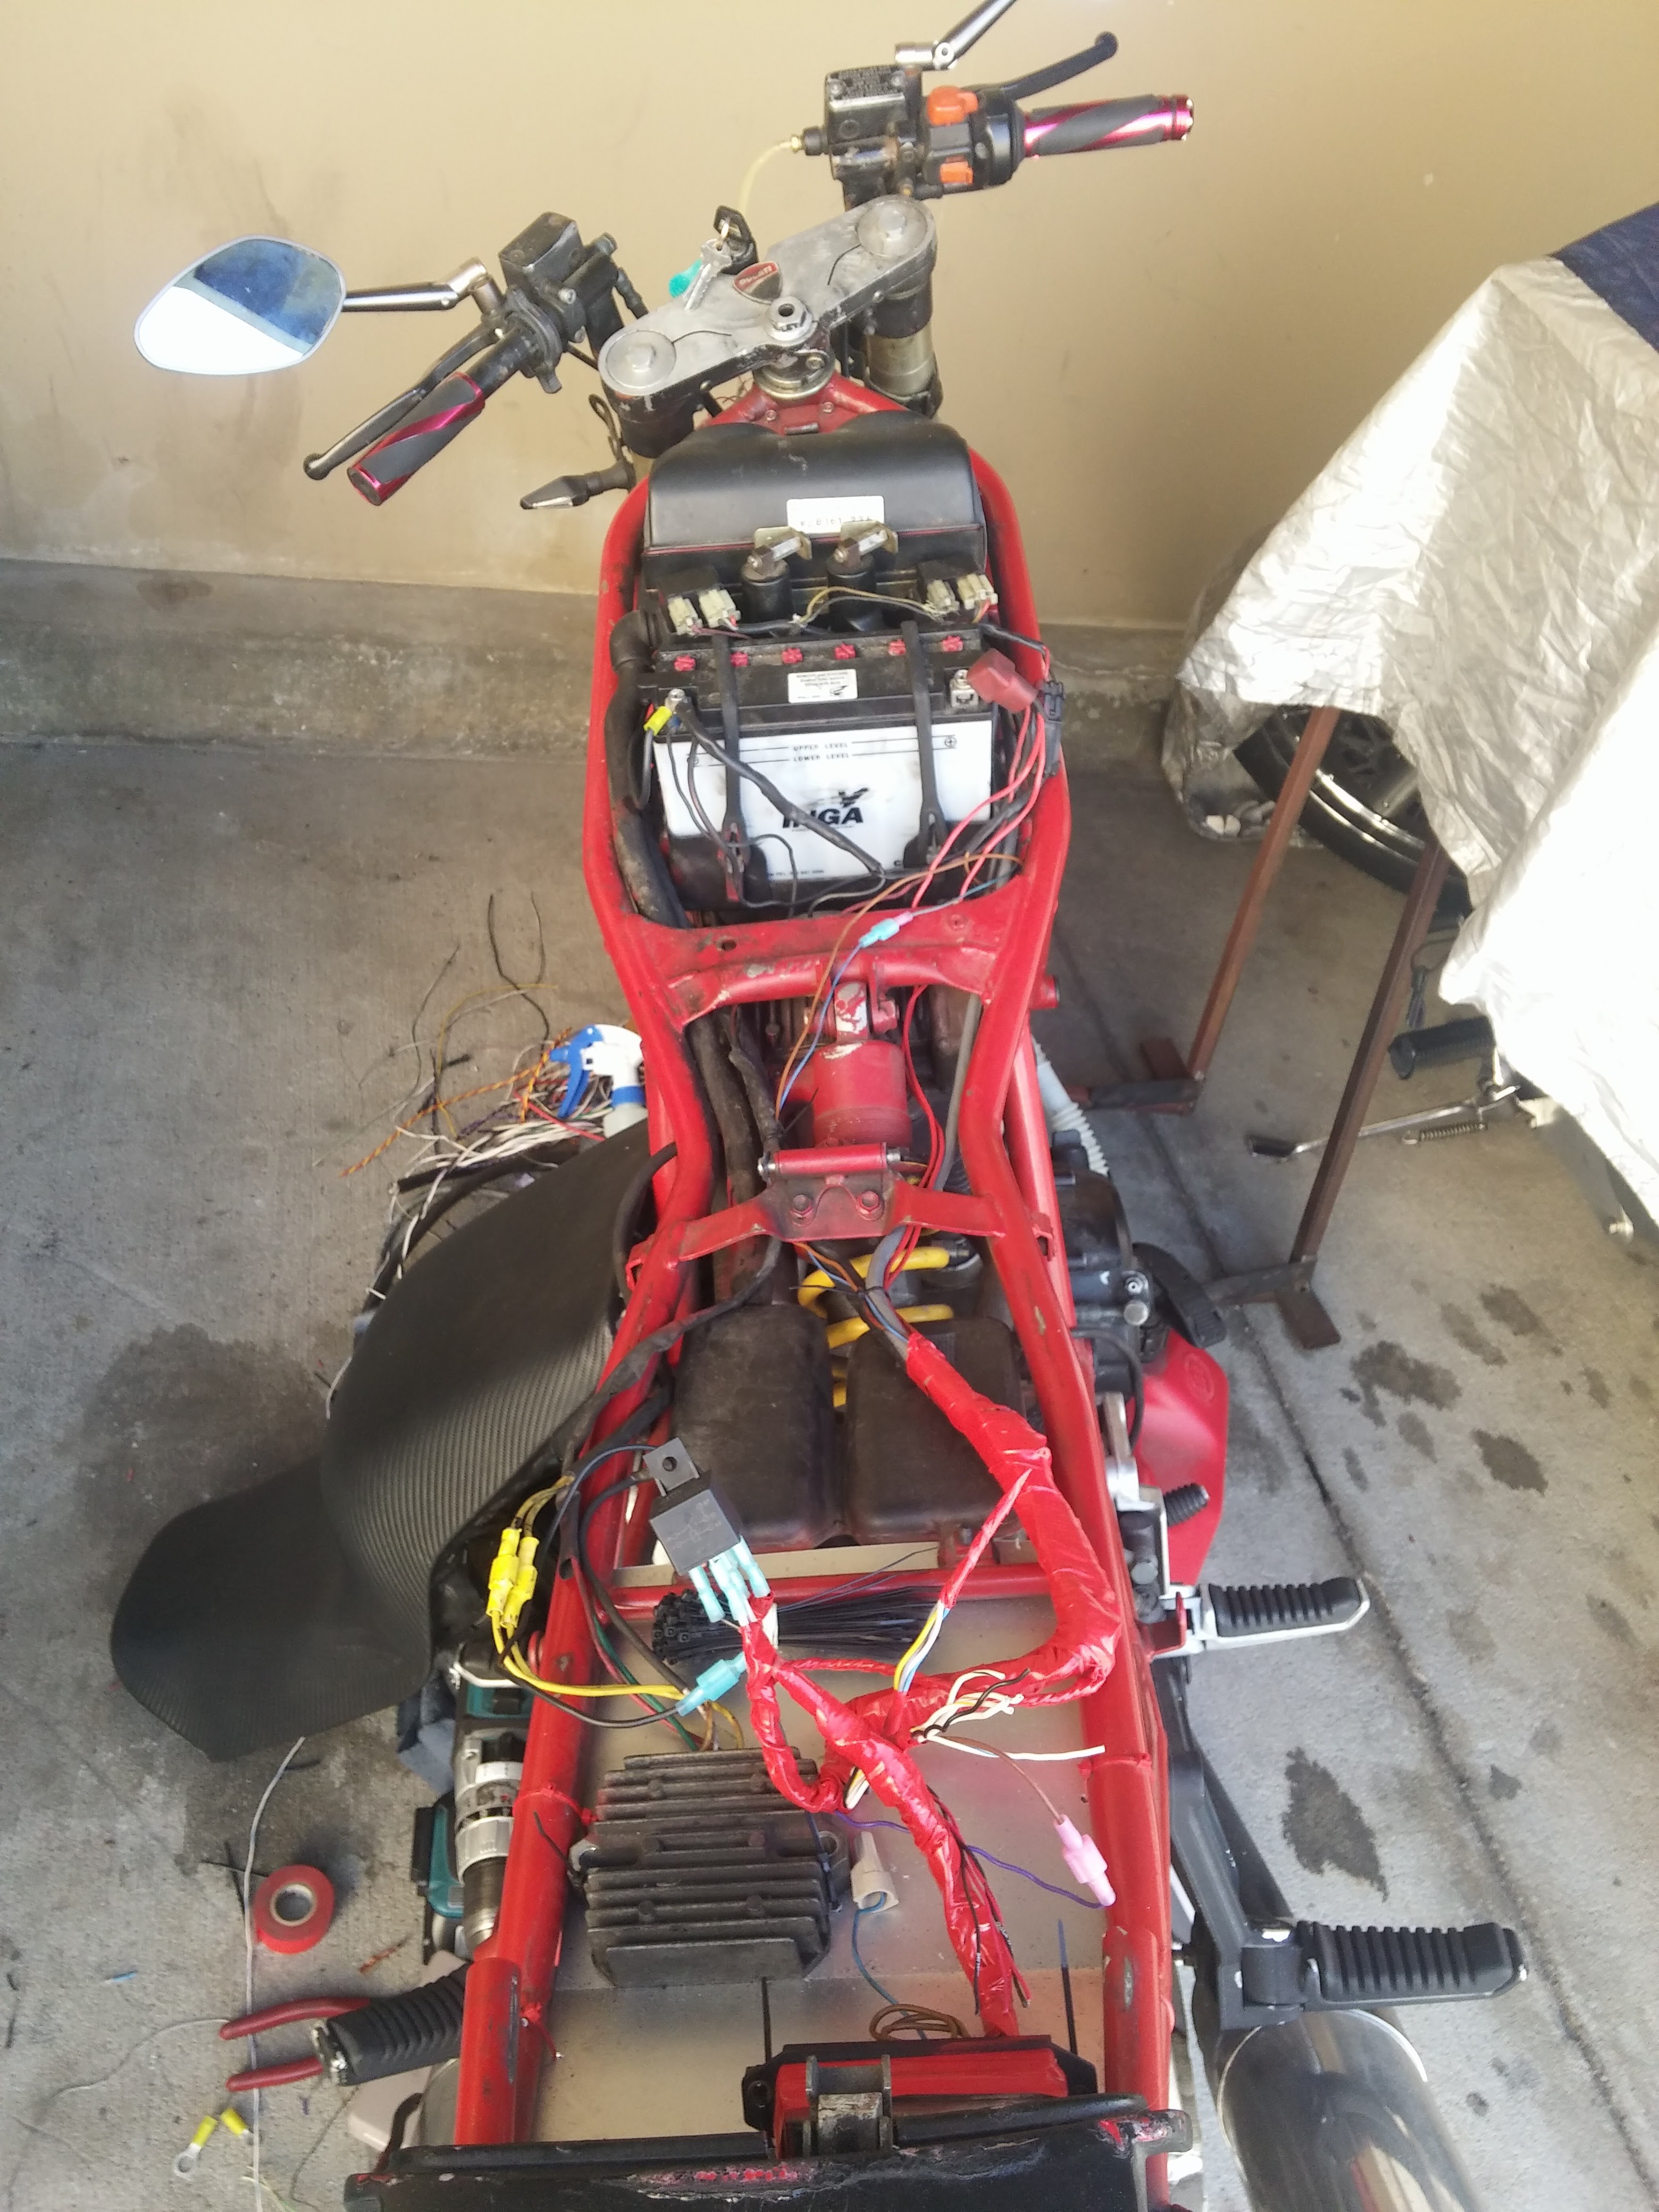 Gallery | Motorcycle wiring DIY. | Hackaday.io